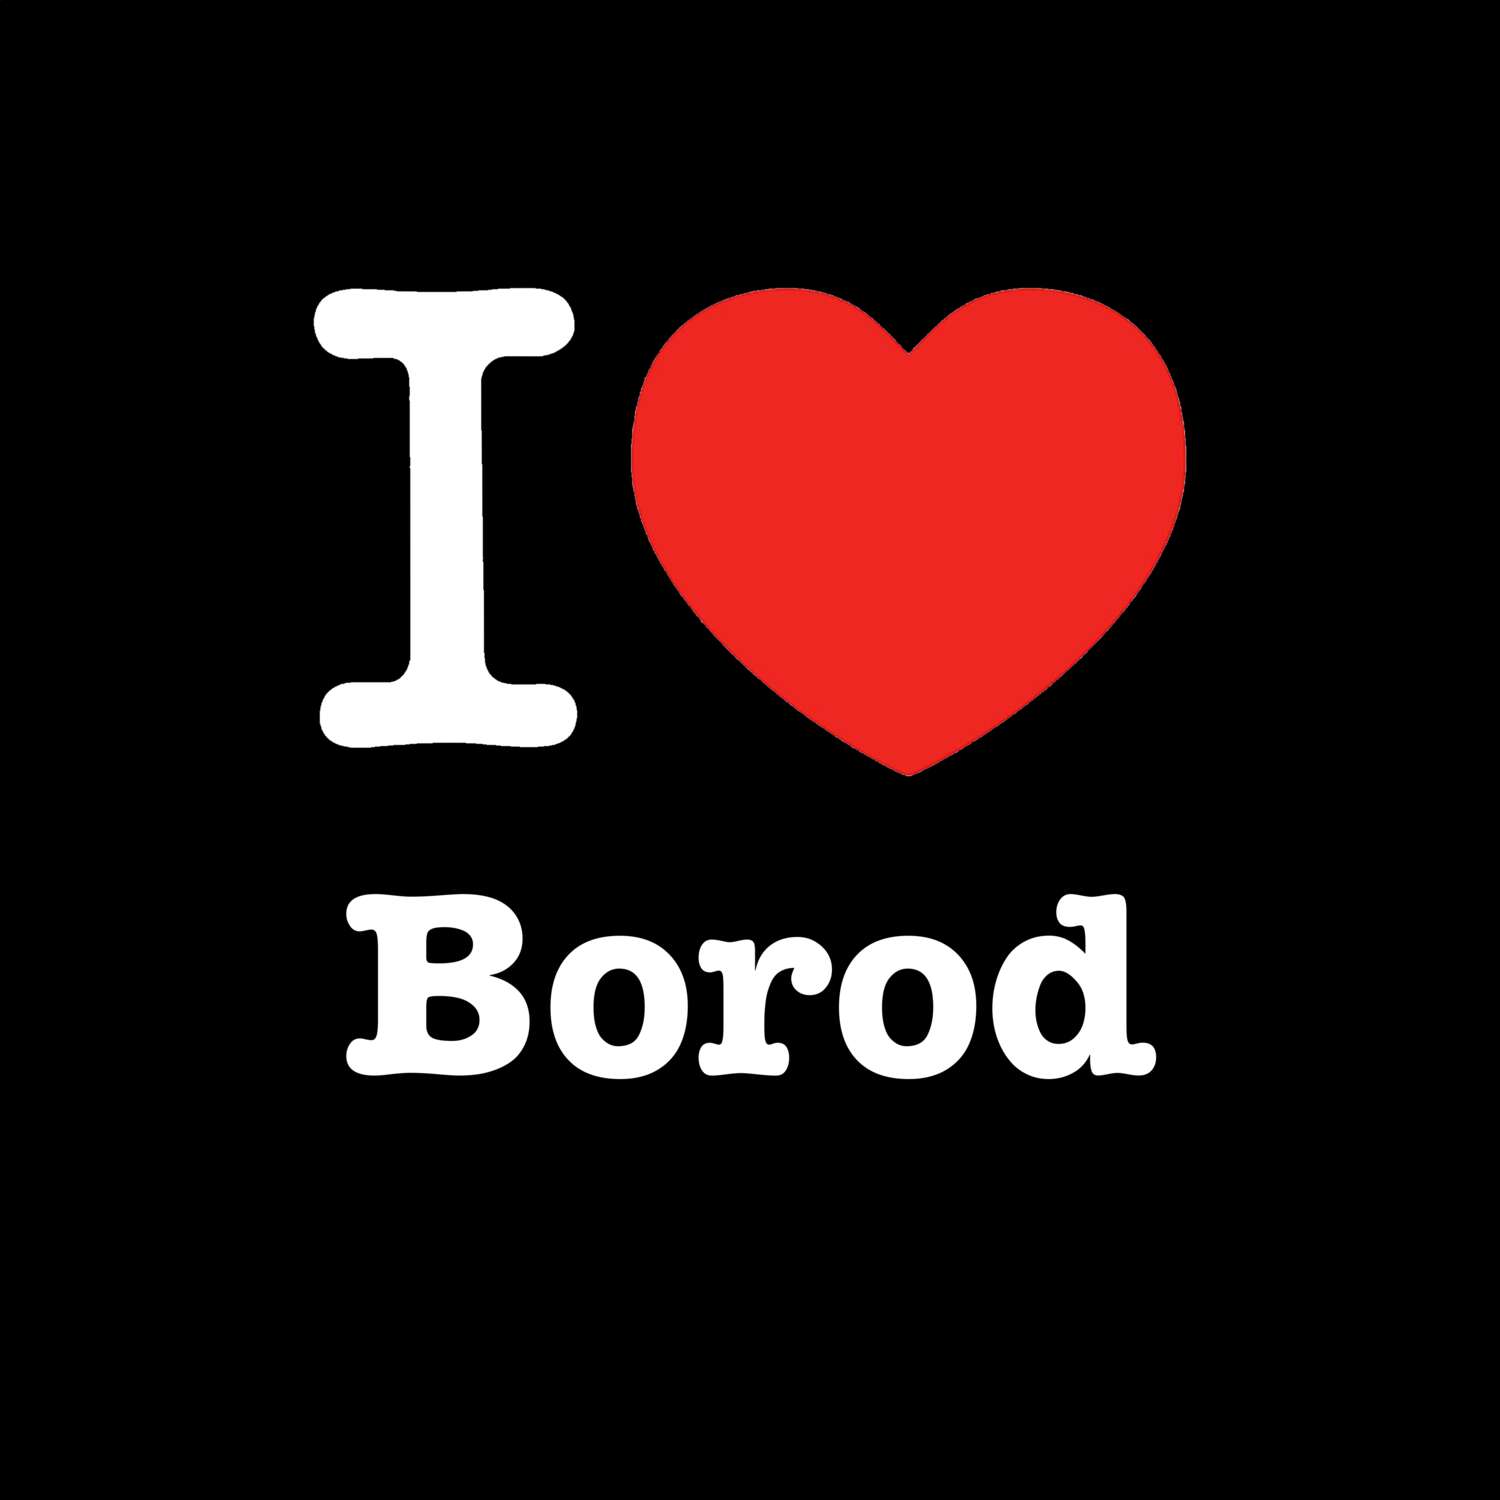 Borod T-Shirt »I love«